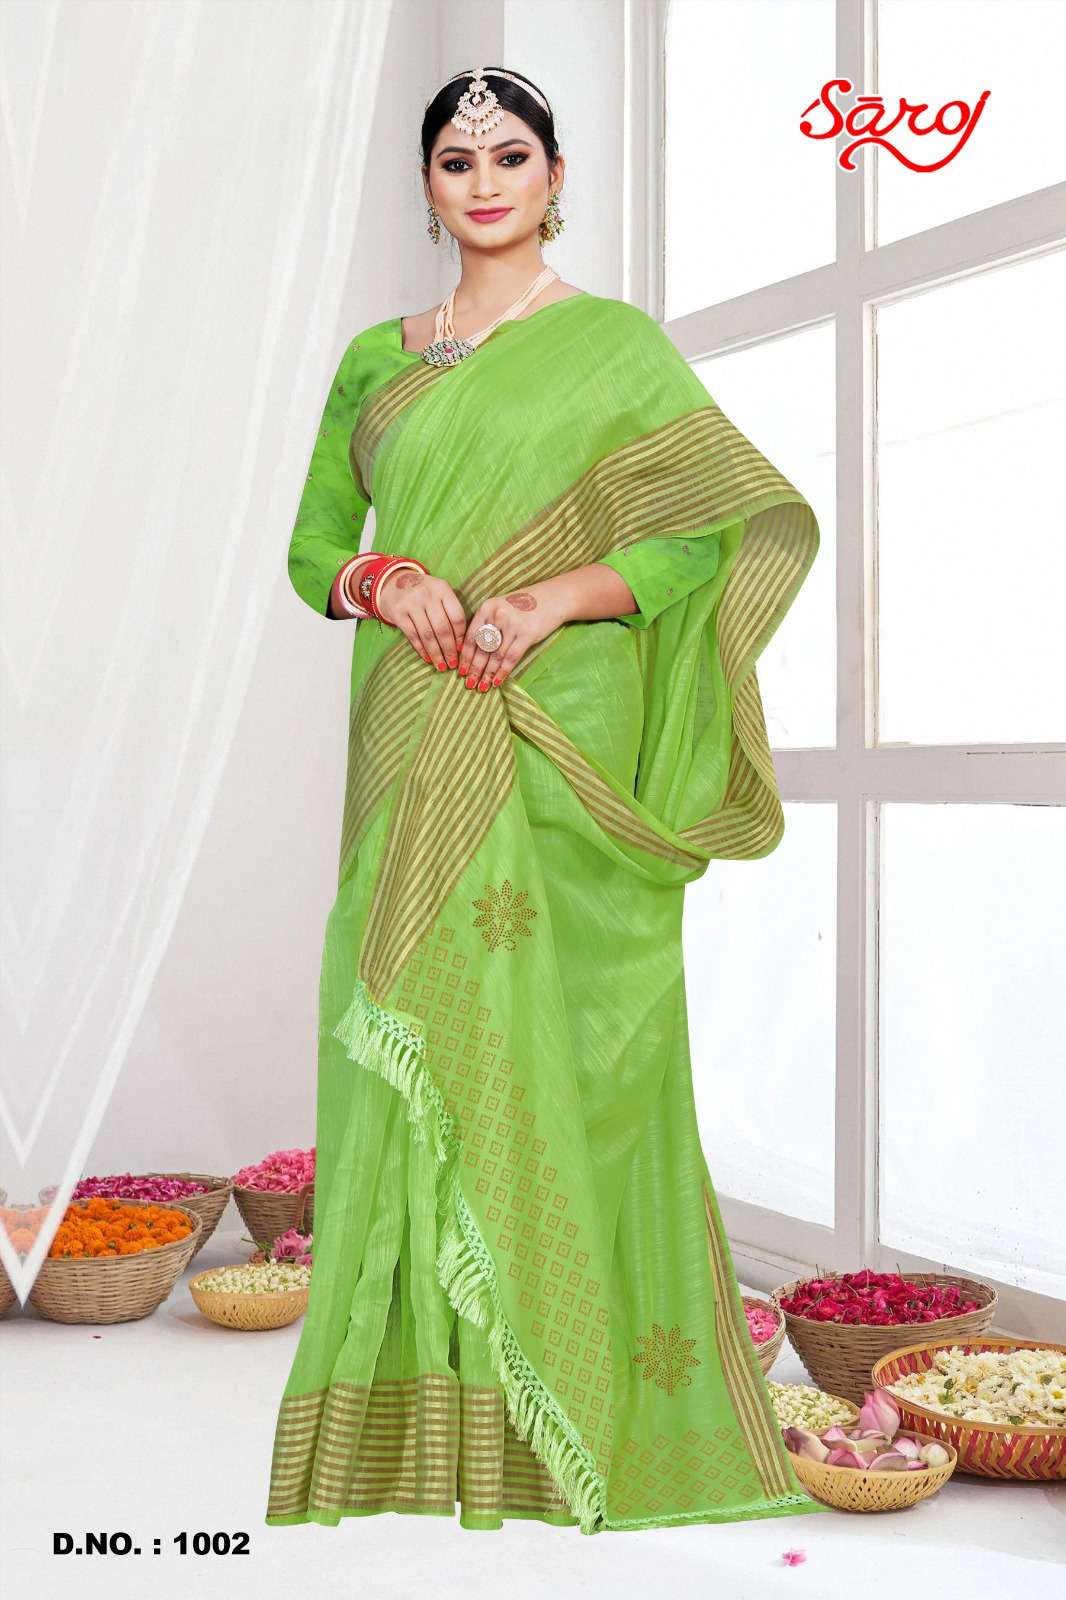 Saroj textile presents Mahotsav vol-2 cotton sarees catalogue